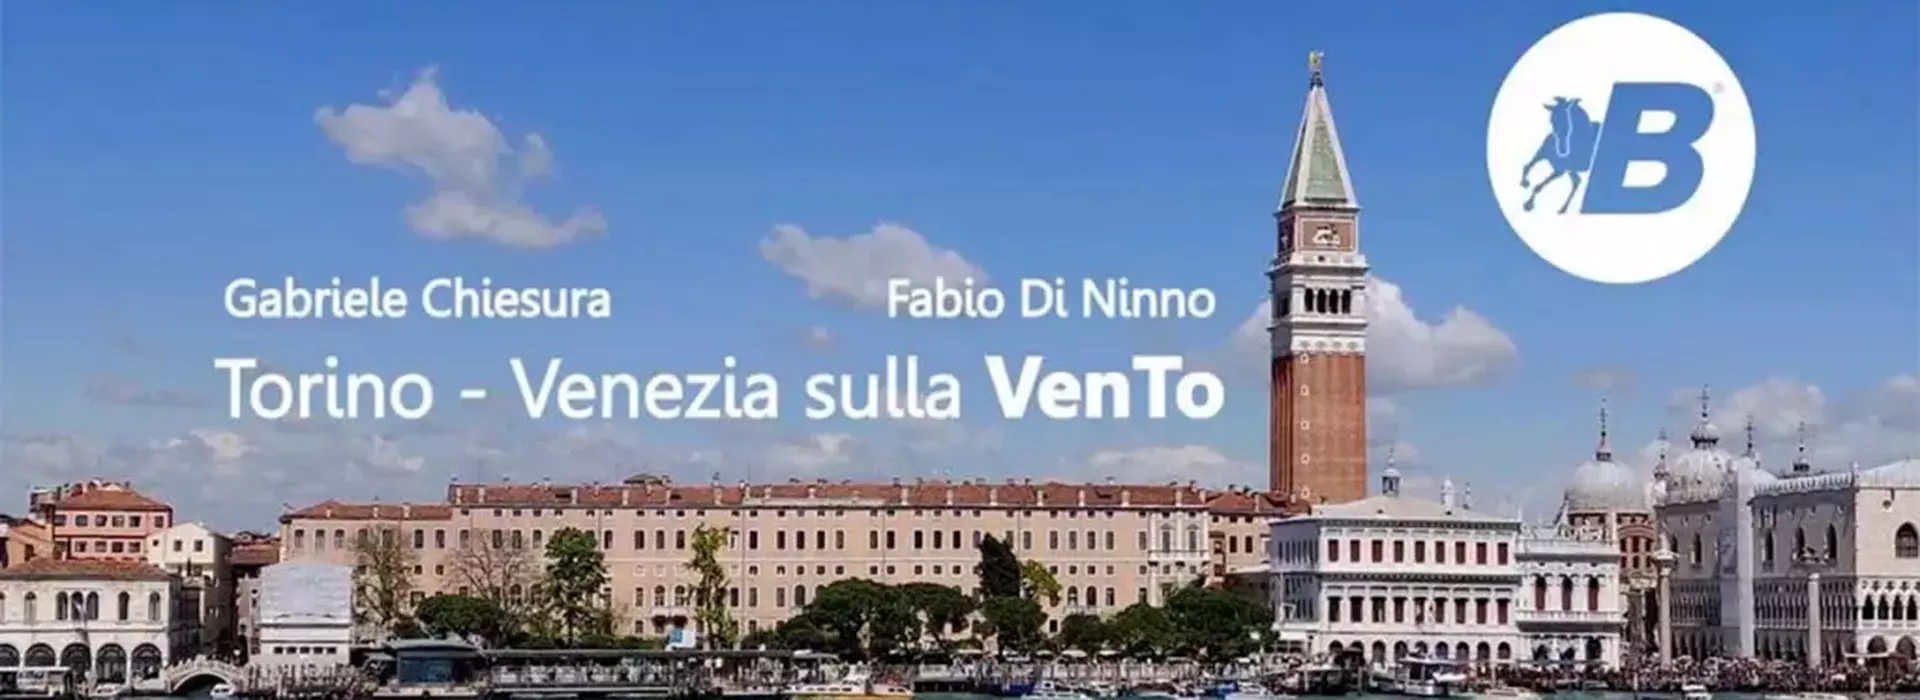 copertina articolo e del video Torino - Venezia in bicicletta con Gabriele Chiesura e Fabio di Ninno, con la bella veduta di Venezia e piazza San Marco